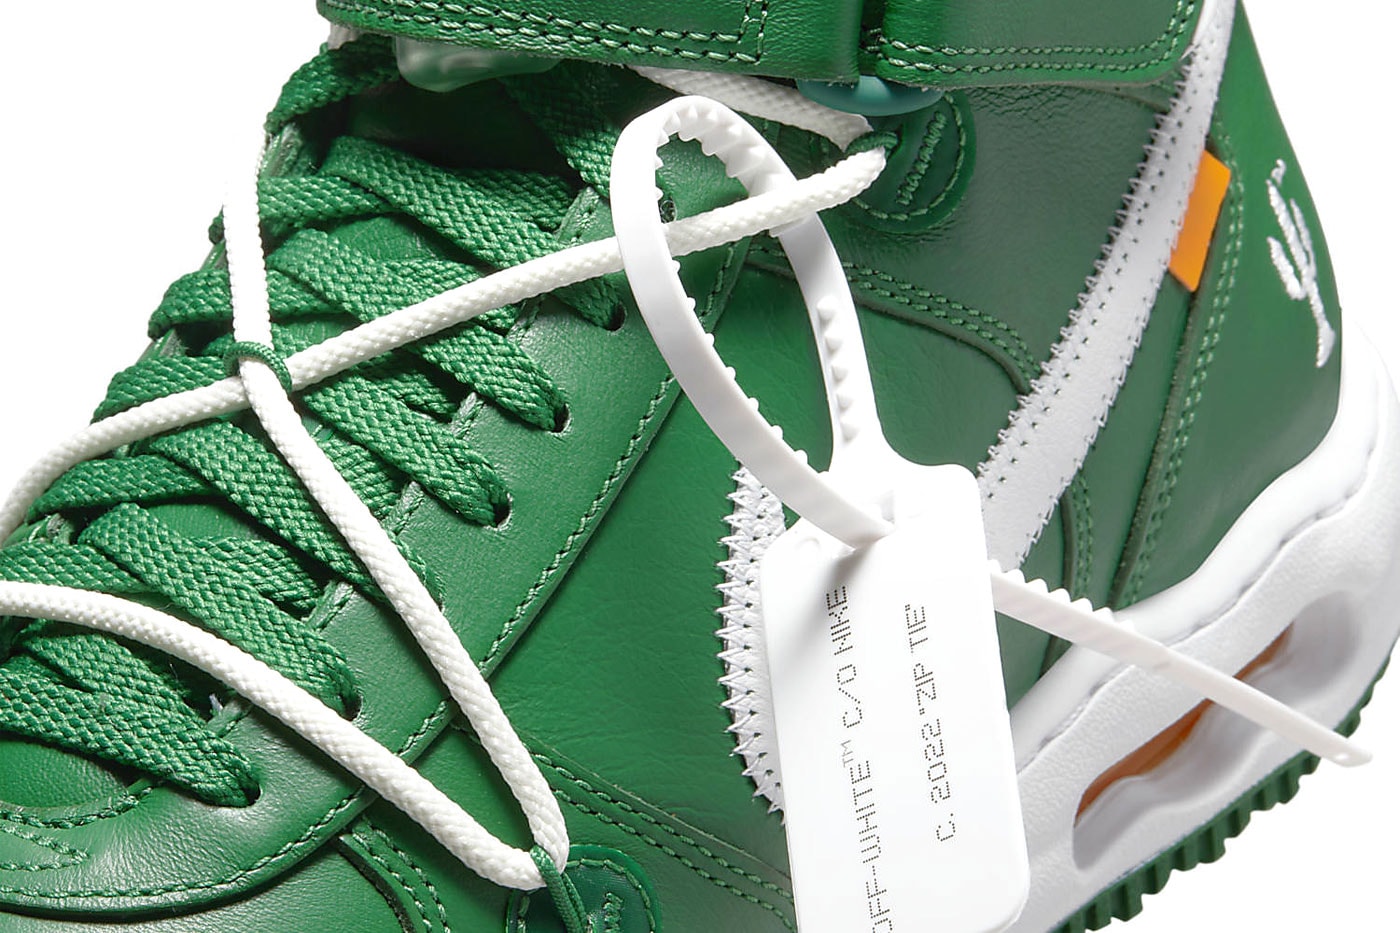 オフホワイト x ナイキエアフォース 1 ミッドから新色 “Pine Green” が登場 Off-White™ Nike Air Force 1 Mid Pine Green Official Look Release Info DR0500-300 Date Buy Price 